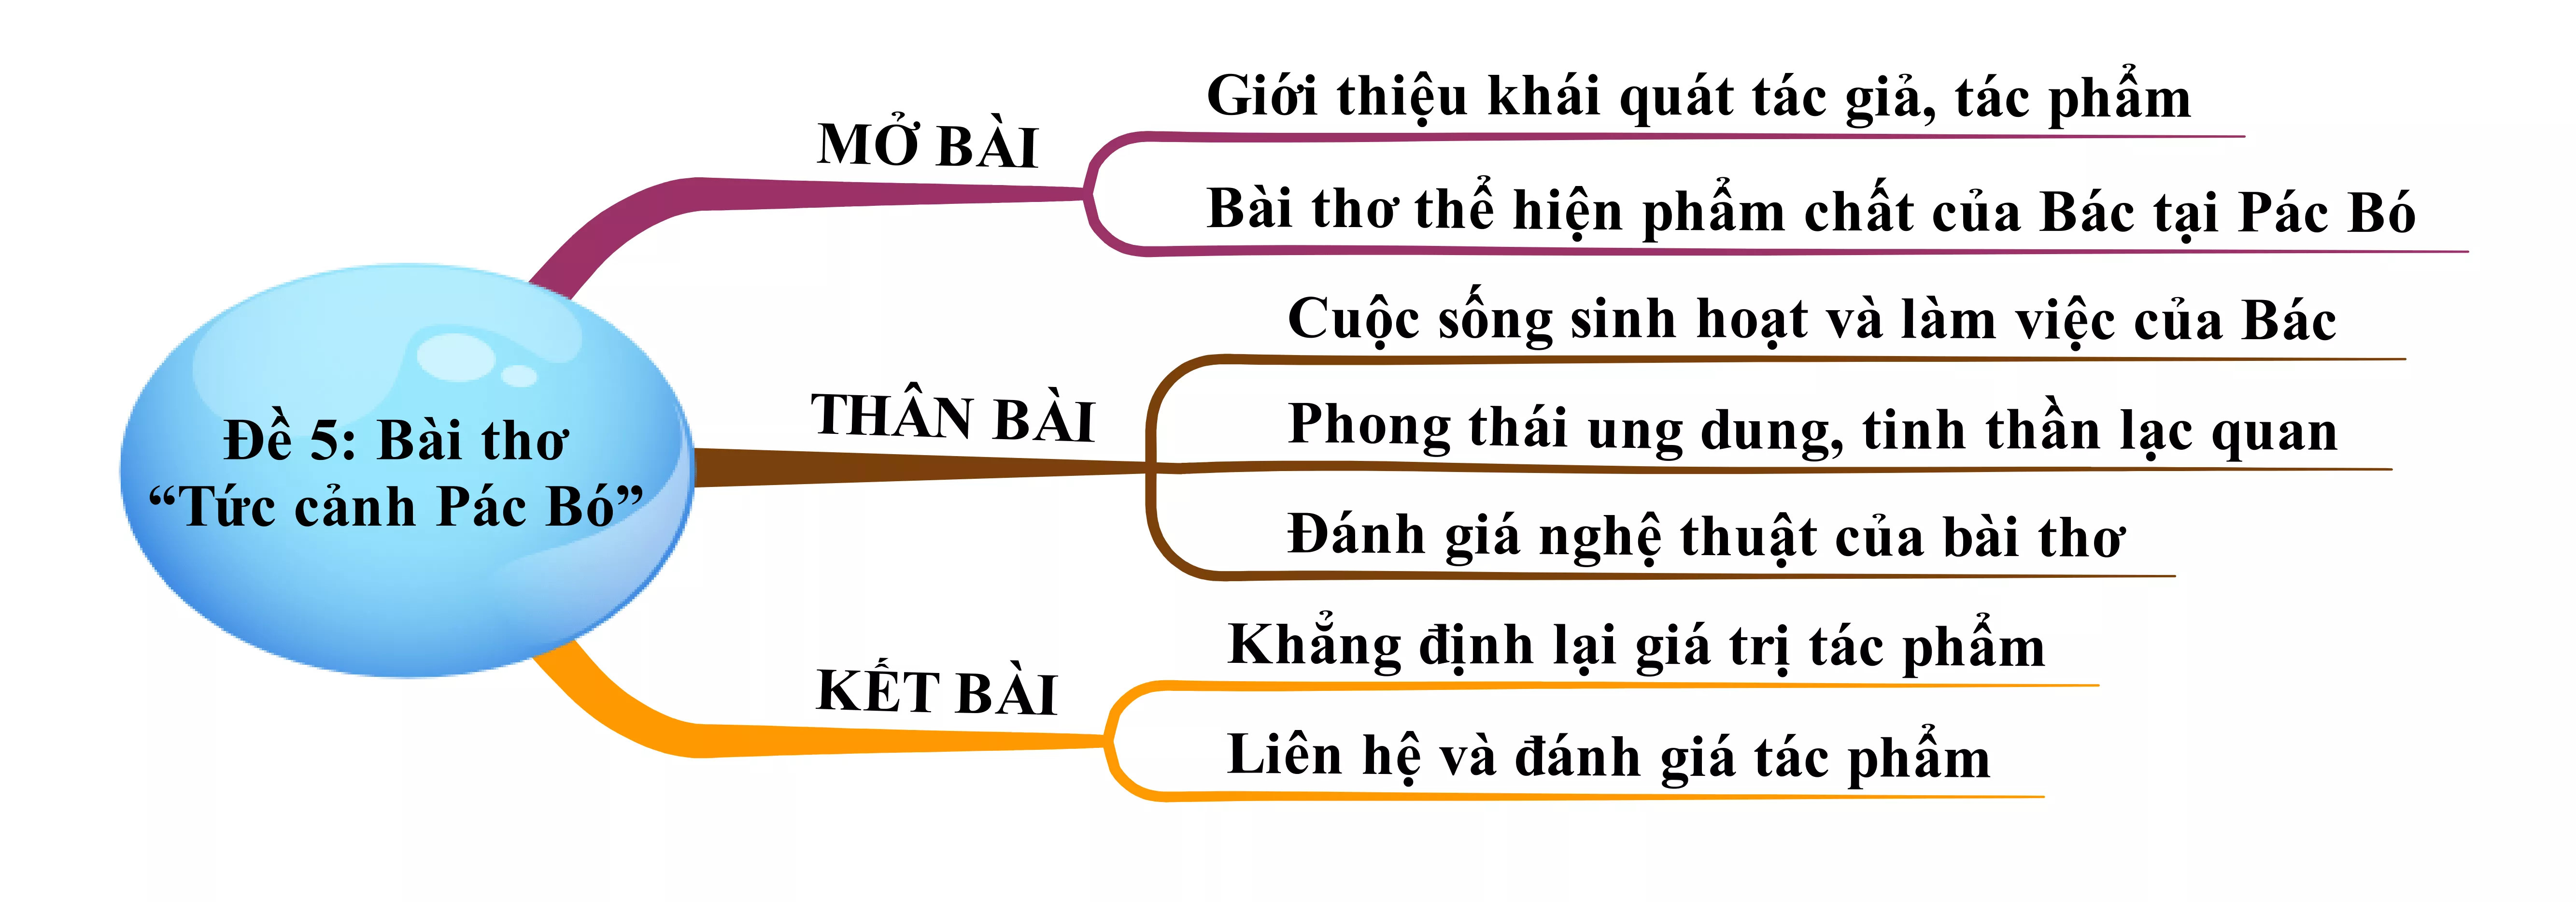 Bài thơ Tức cảnh Pác Bó của Hồ Chí Minh năm 2021 Bai Tho Tuc Canh Pac Bo Cua Ho Chi Minh Nam 2021 22234